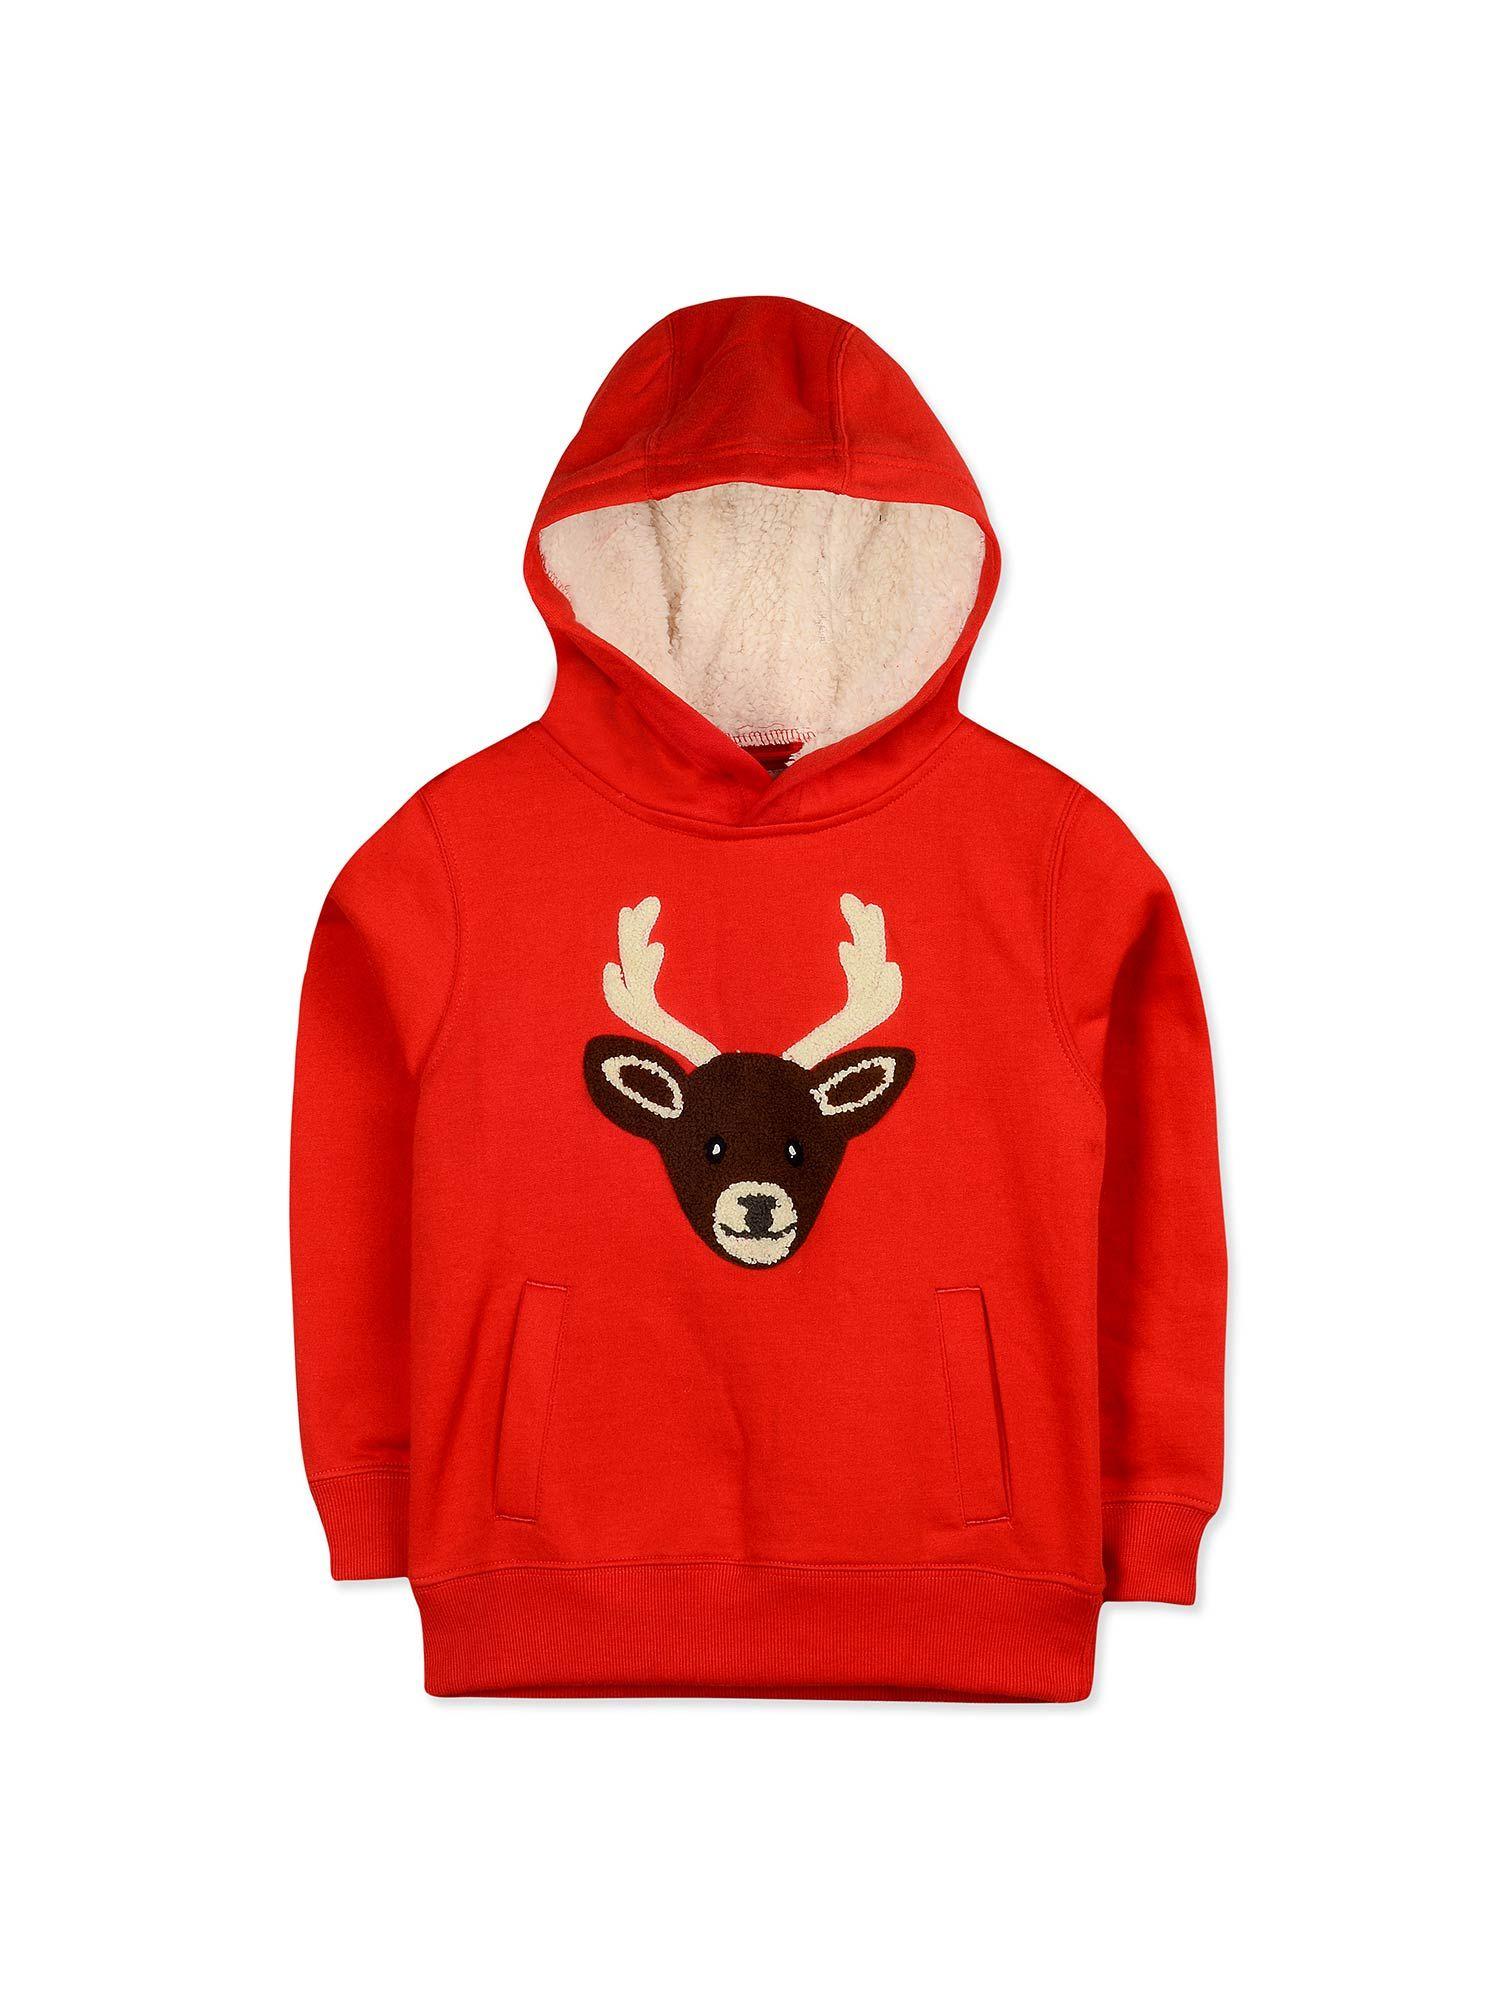 red-deer-hooded-winterwear-holiday-sweatshirt